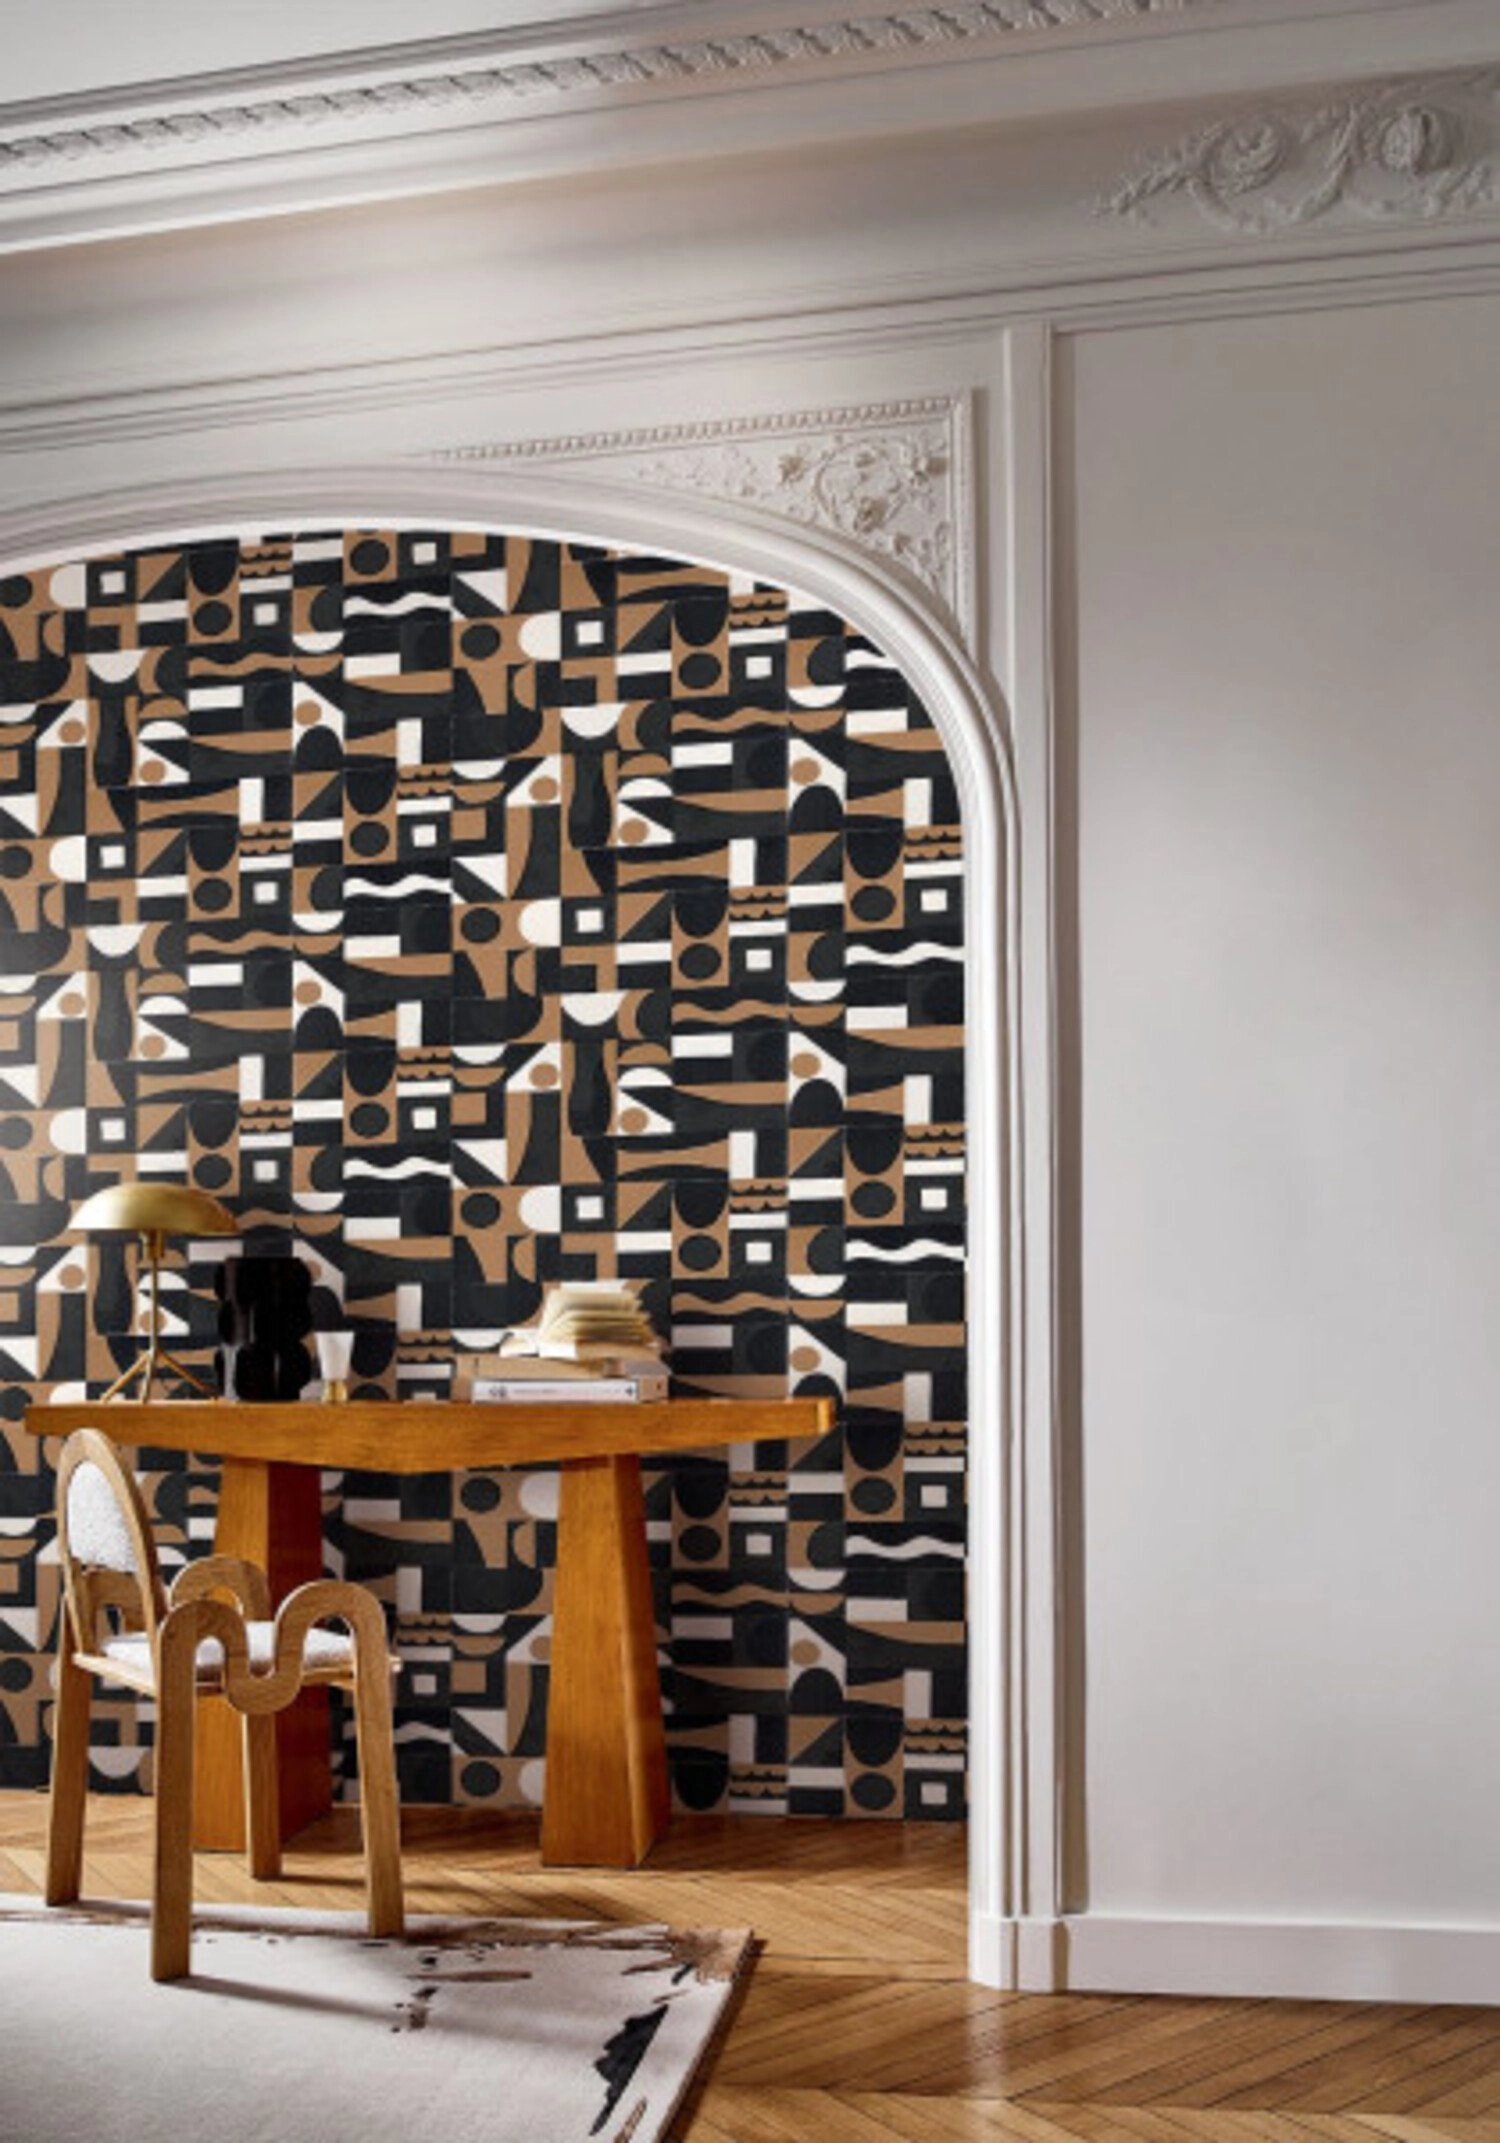 Modern geometrai mintás luxus Casamance dekor tapéta fekete, fehér, arany színekkel